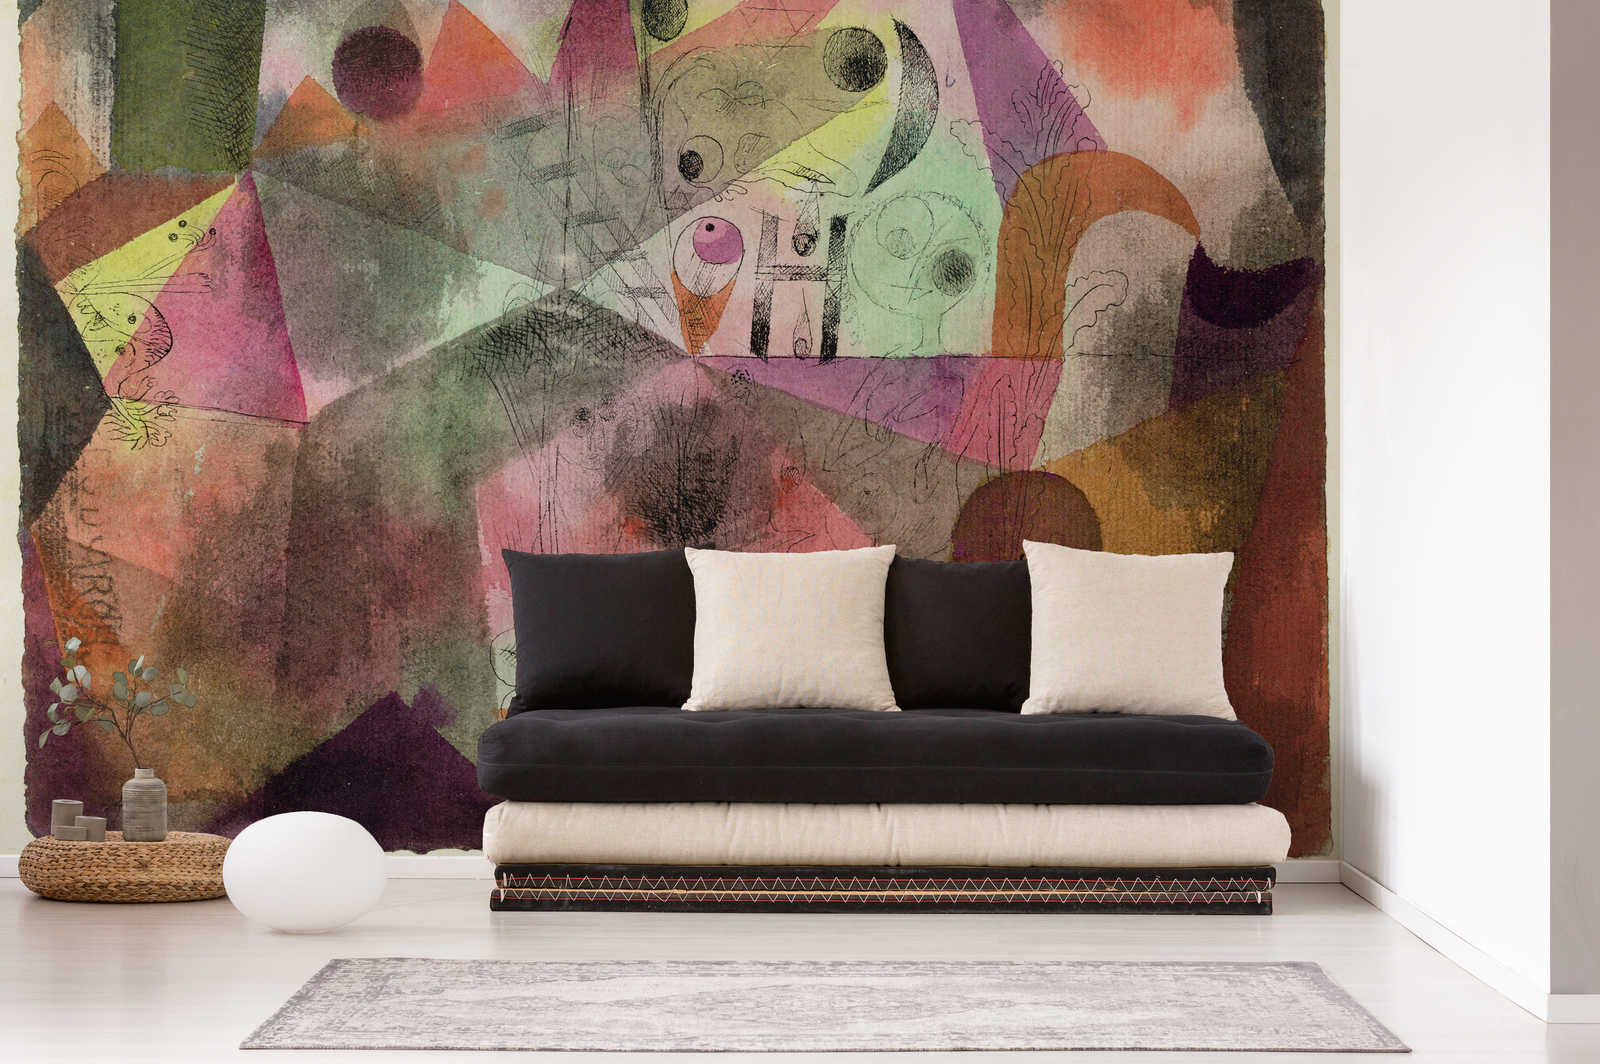             Muurschildering "Met de H" van Paul Klee
        